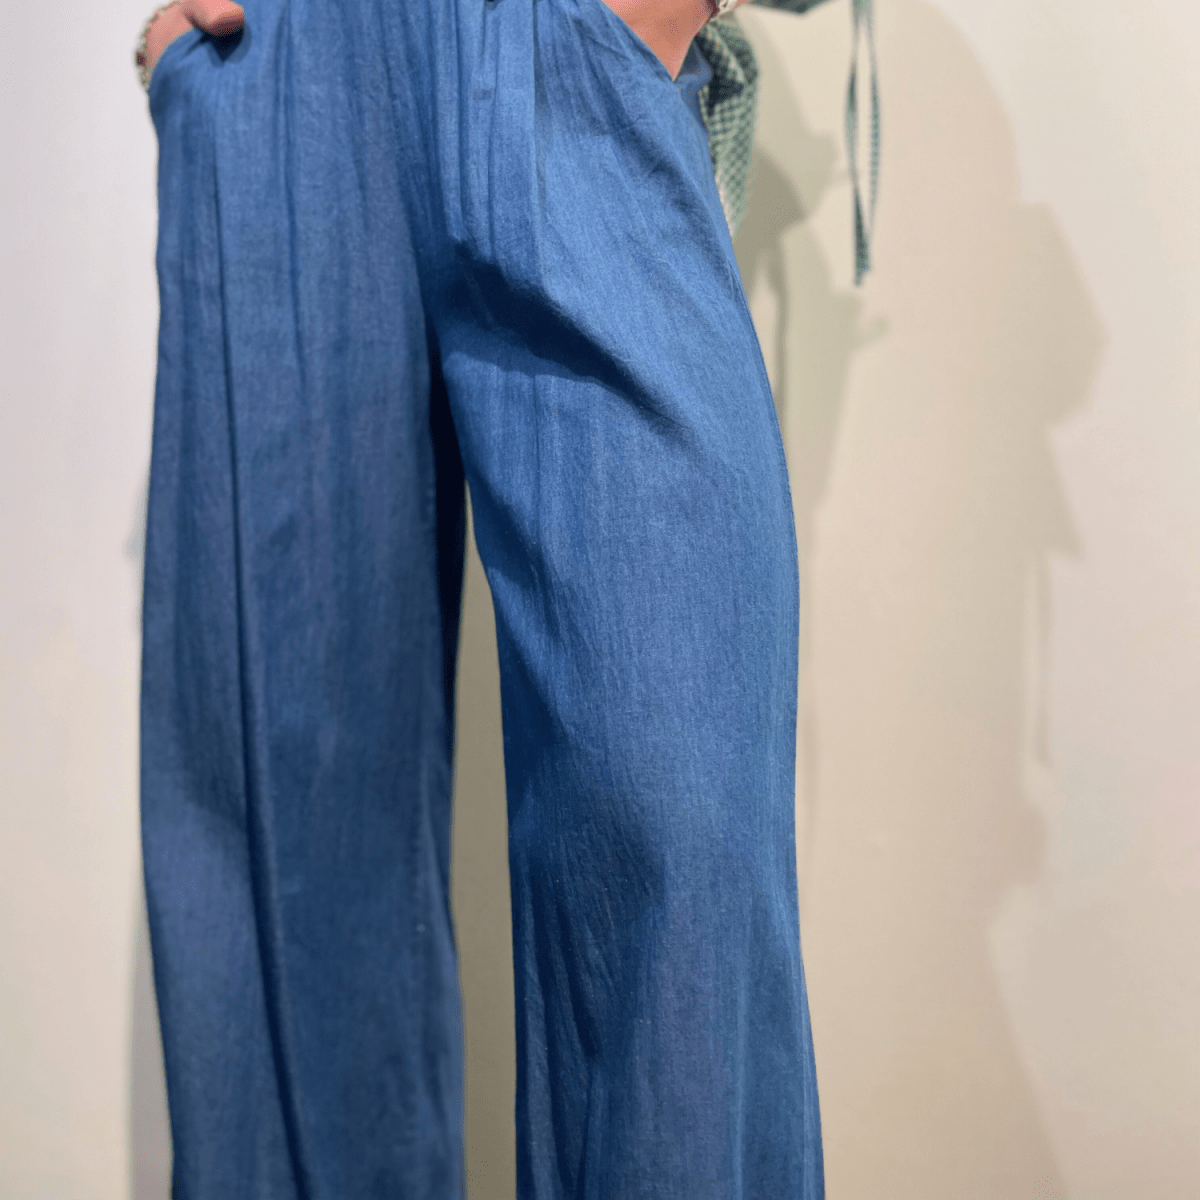  En person viser sideprofilen af blå chambray bukser med hånden på hoften. Skjorten, som er i et grønt og hvidt tern, er stoppet ind i buksernes linning. Dette mave-nærbillede er taget mod en neutral baggrund med en skygge af personen synlig på væggen til højre.